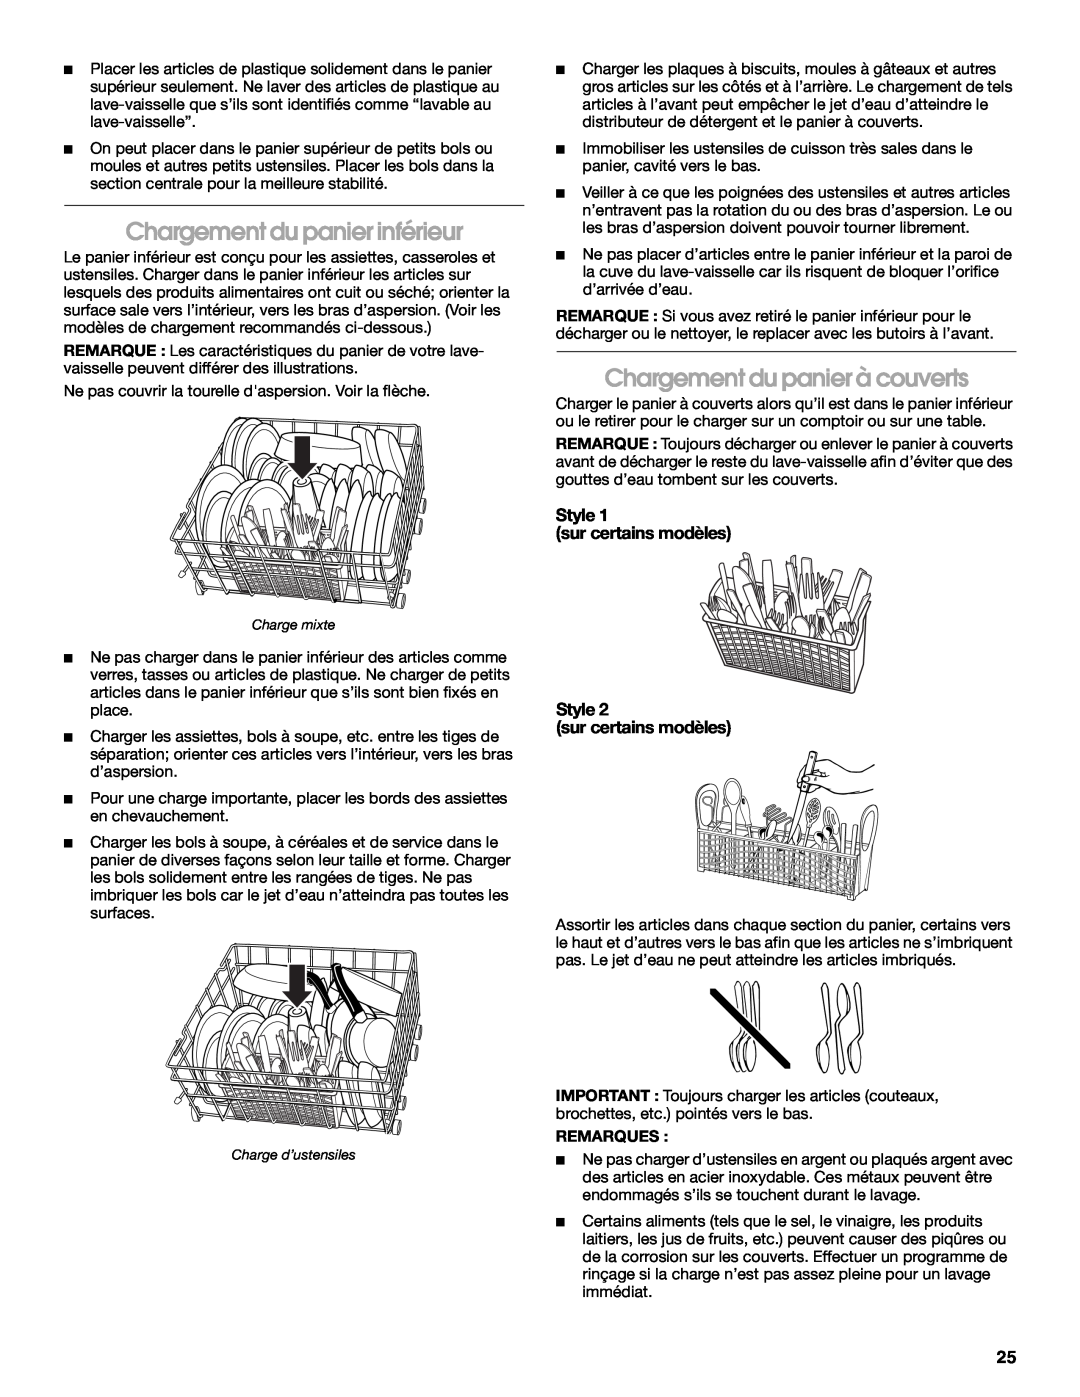 IKEA IUD6000S manual Chargement du panier inférieur, Chargement du panier à couverts, Style sur certains modèles, Remarques 